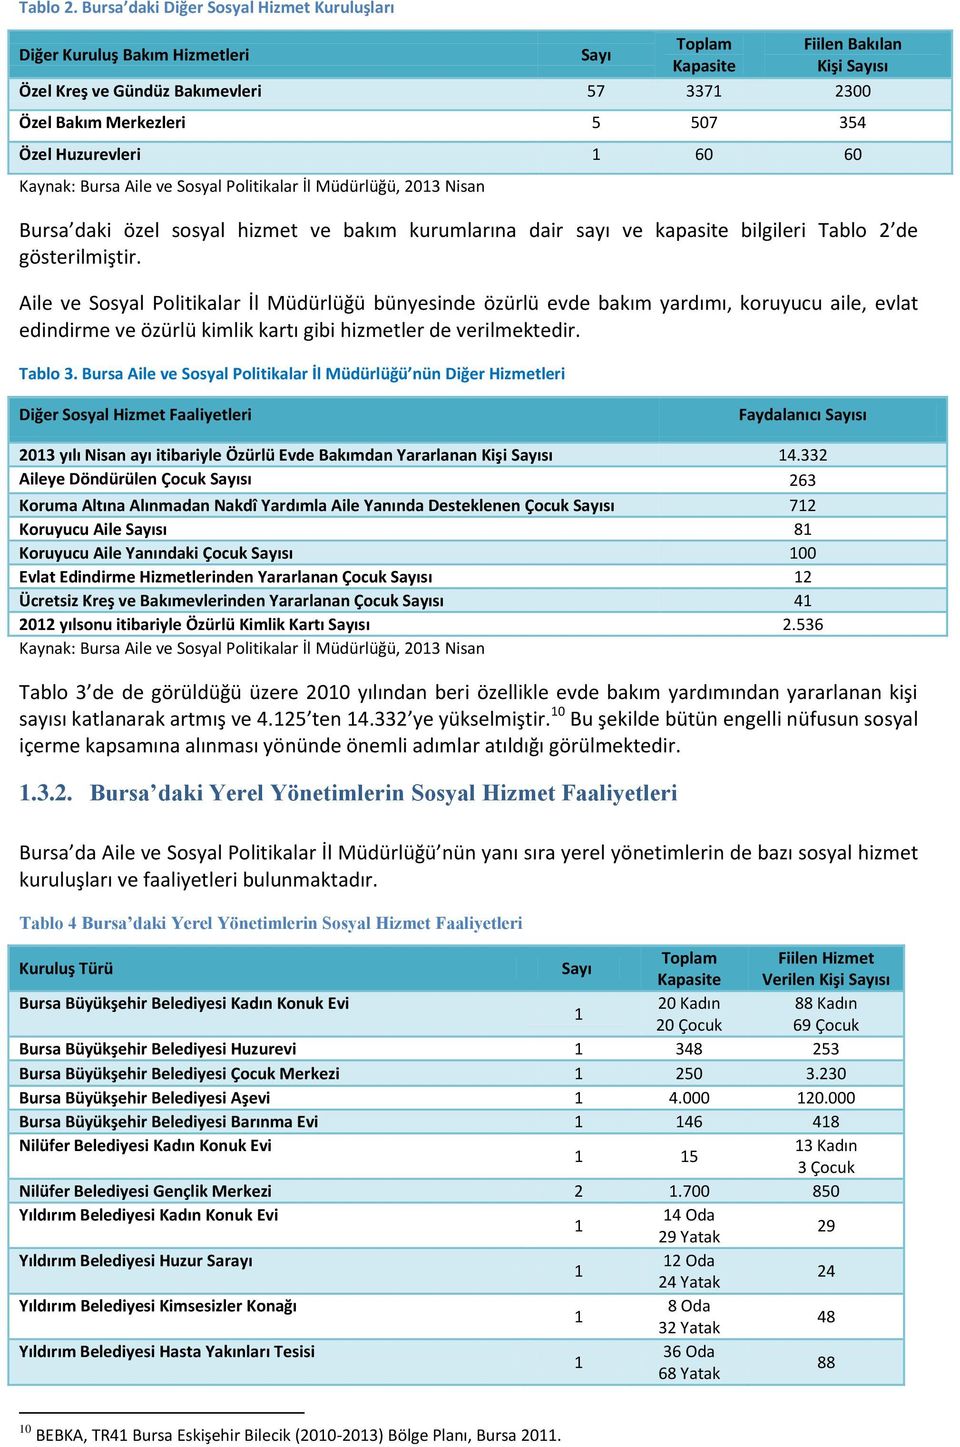 Özel Huzurevleri 1 60 60 Kaynak: Bursa Aile ve Sosyal Politikalar İl Müdürlüğü, 2013 Nisan Bursa daki özel sosyal hizmet ve bakım kurumlarına dair sayı ve kapasite bilgileri Tablo 2 de gösterilmiştir.